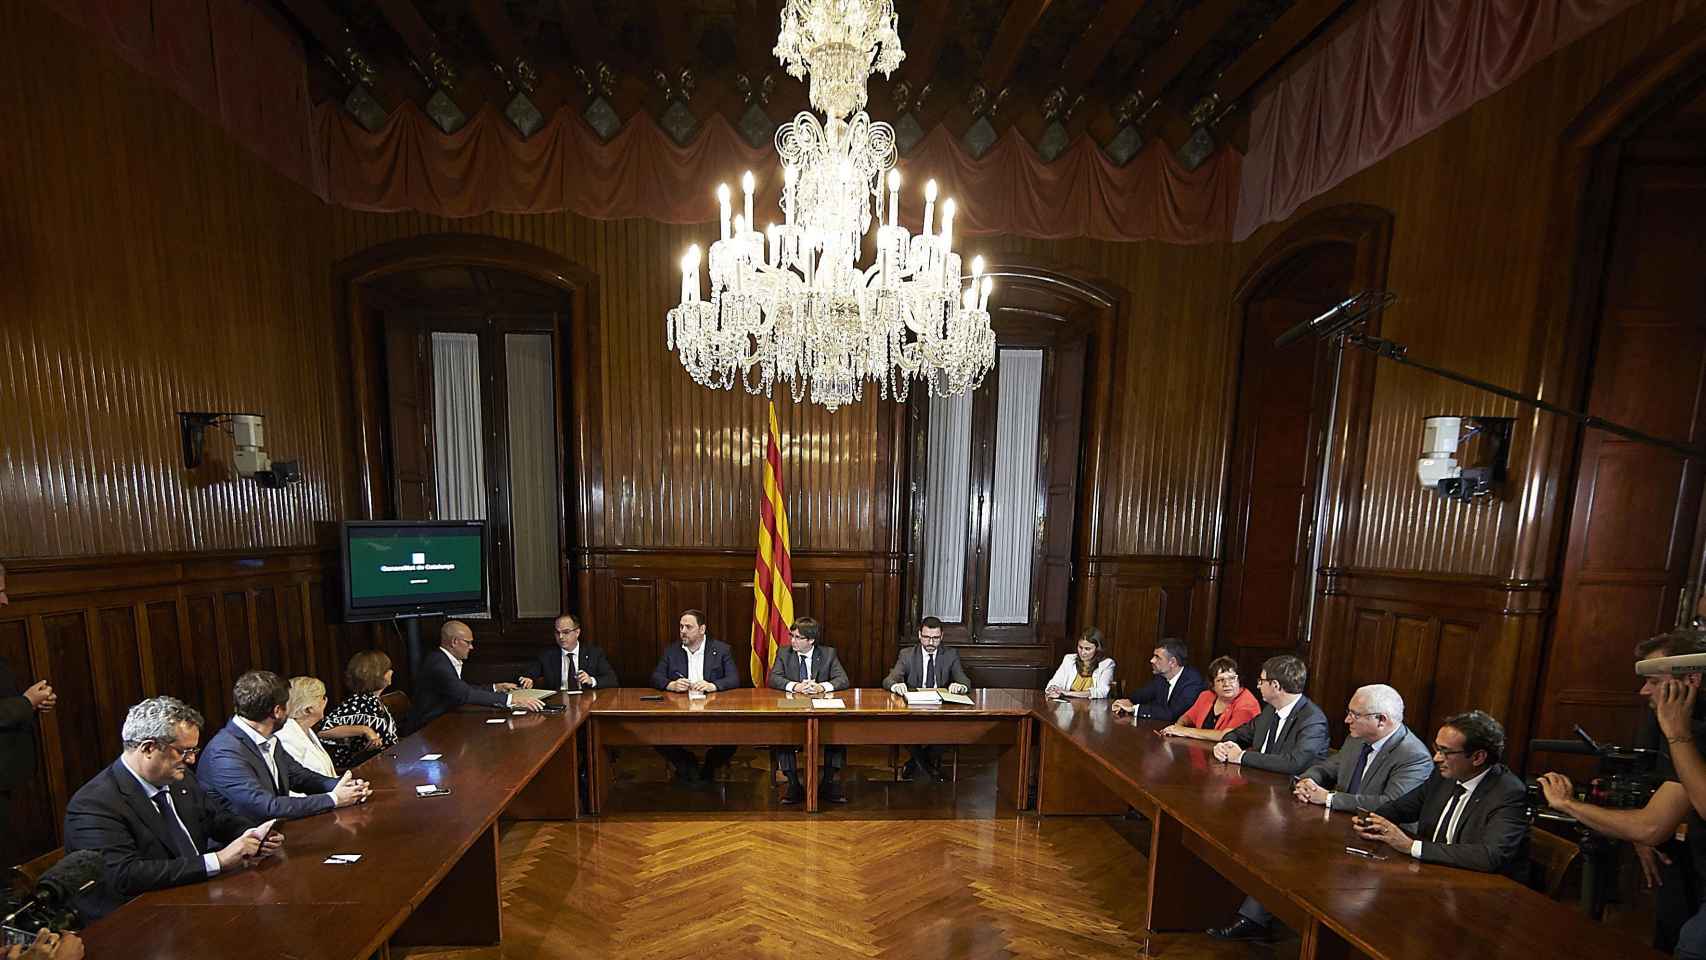 Puigdemont y Junqueras firman la convocatoria del referéndum.